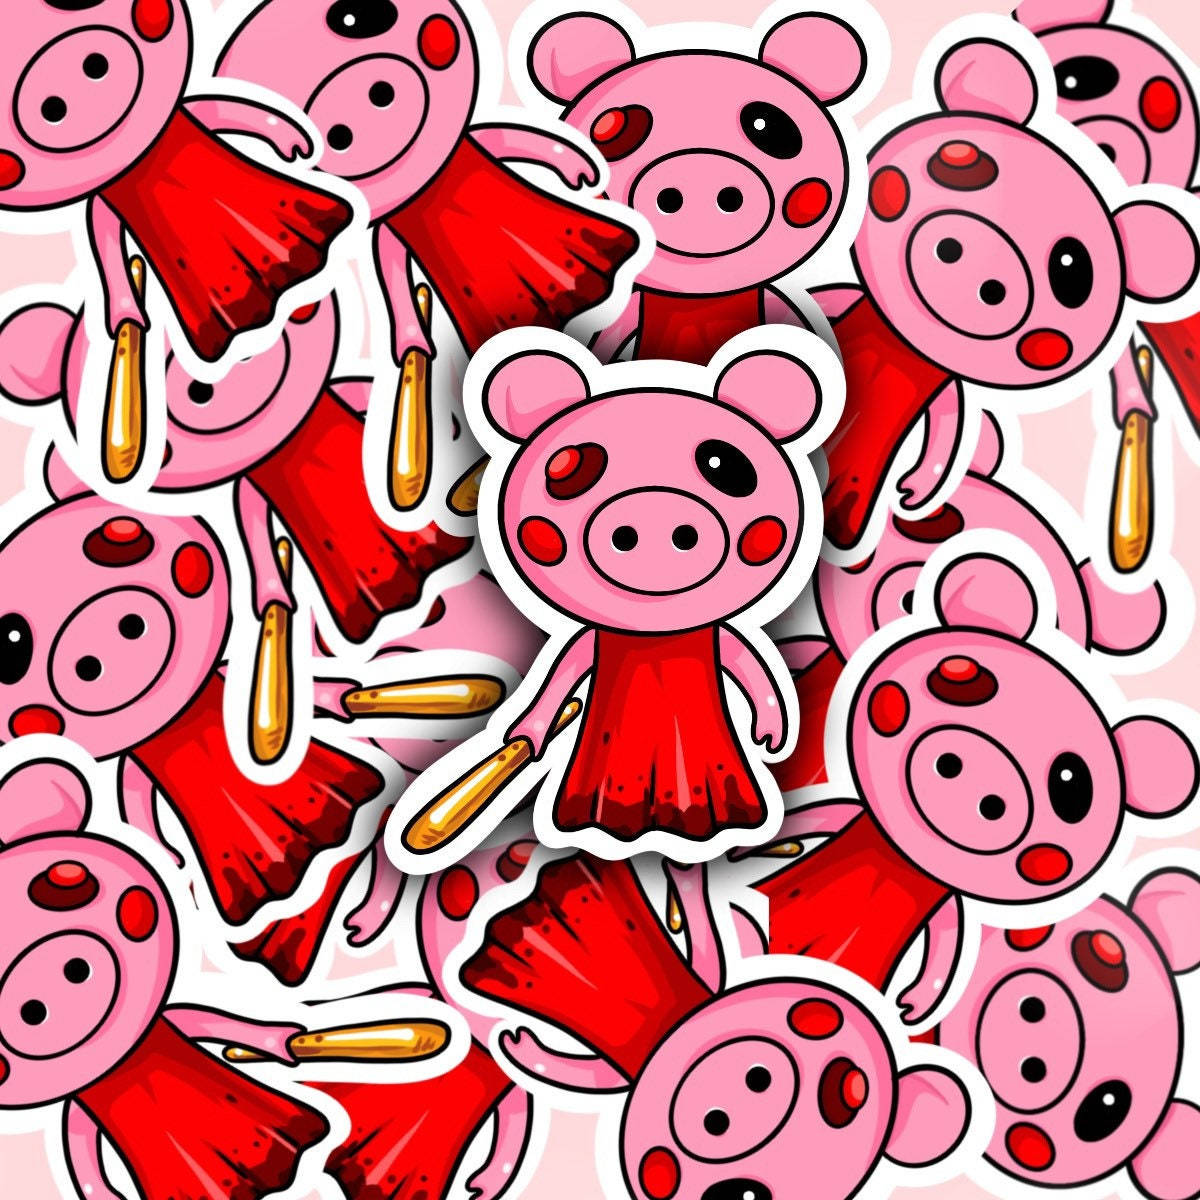 Cute Roblox Piggy Cartoon Wallpaper